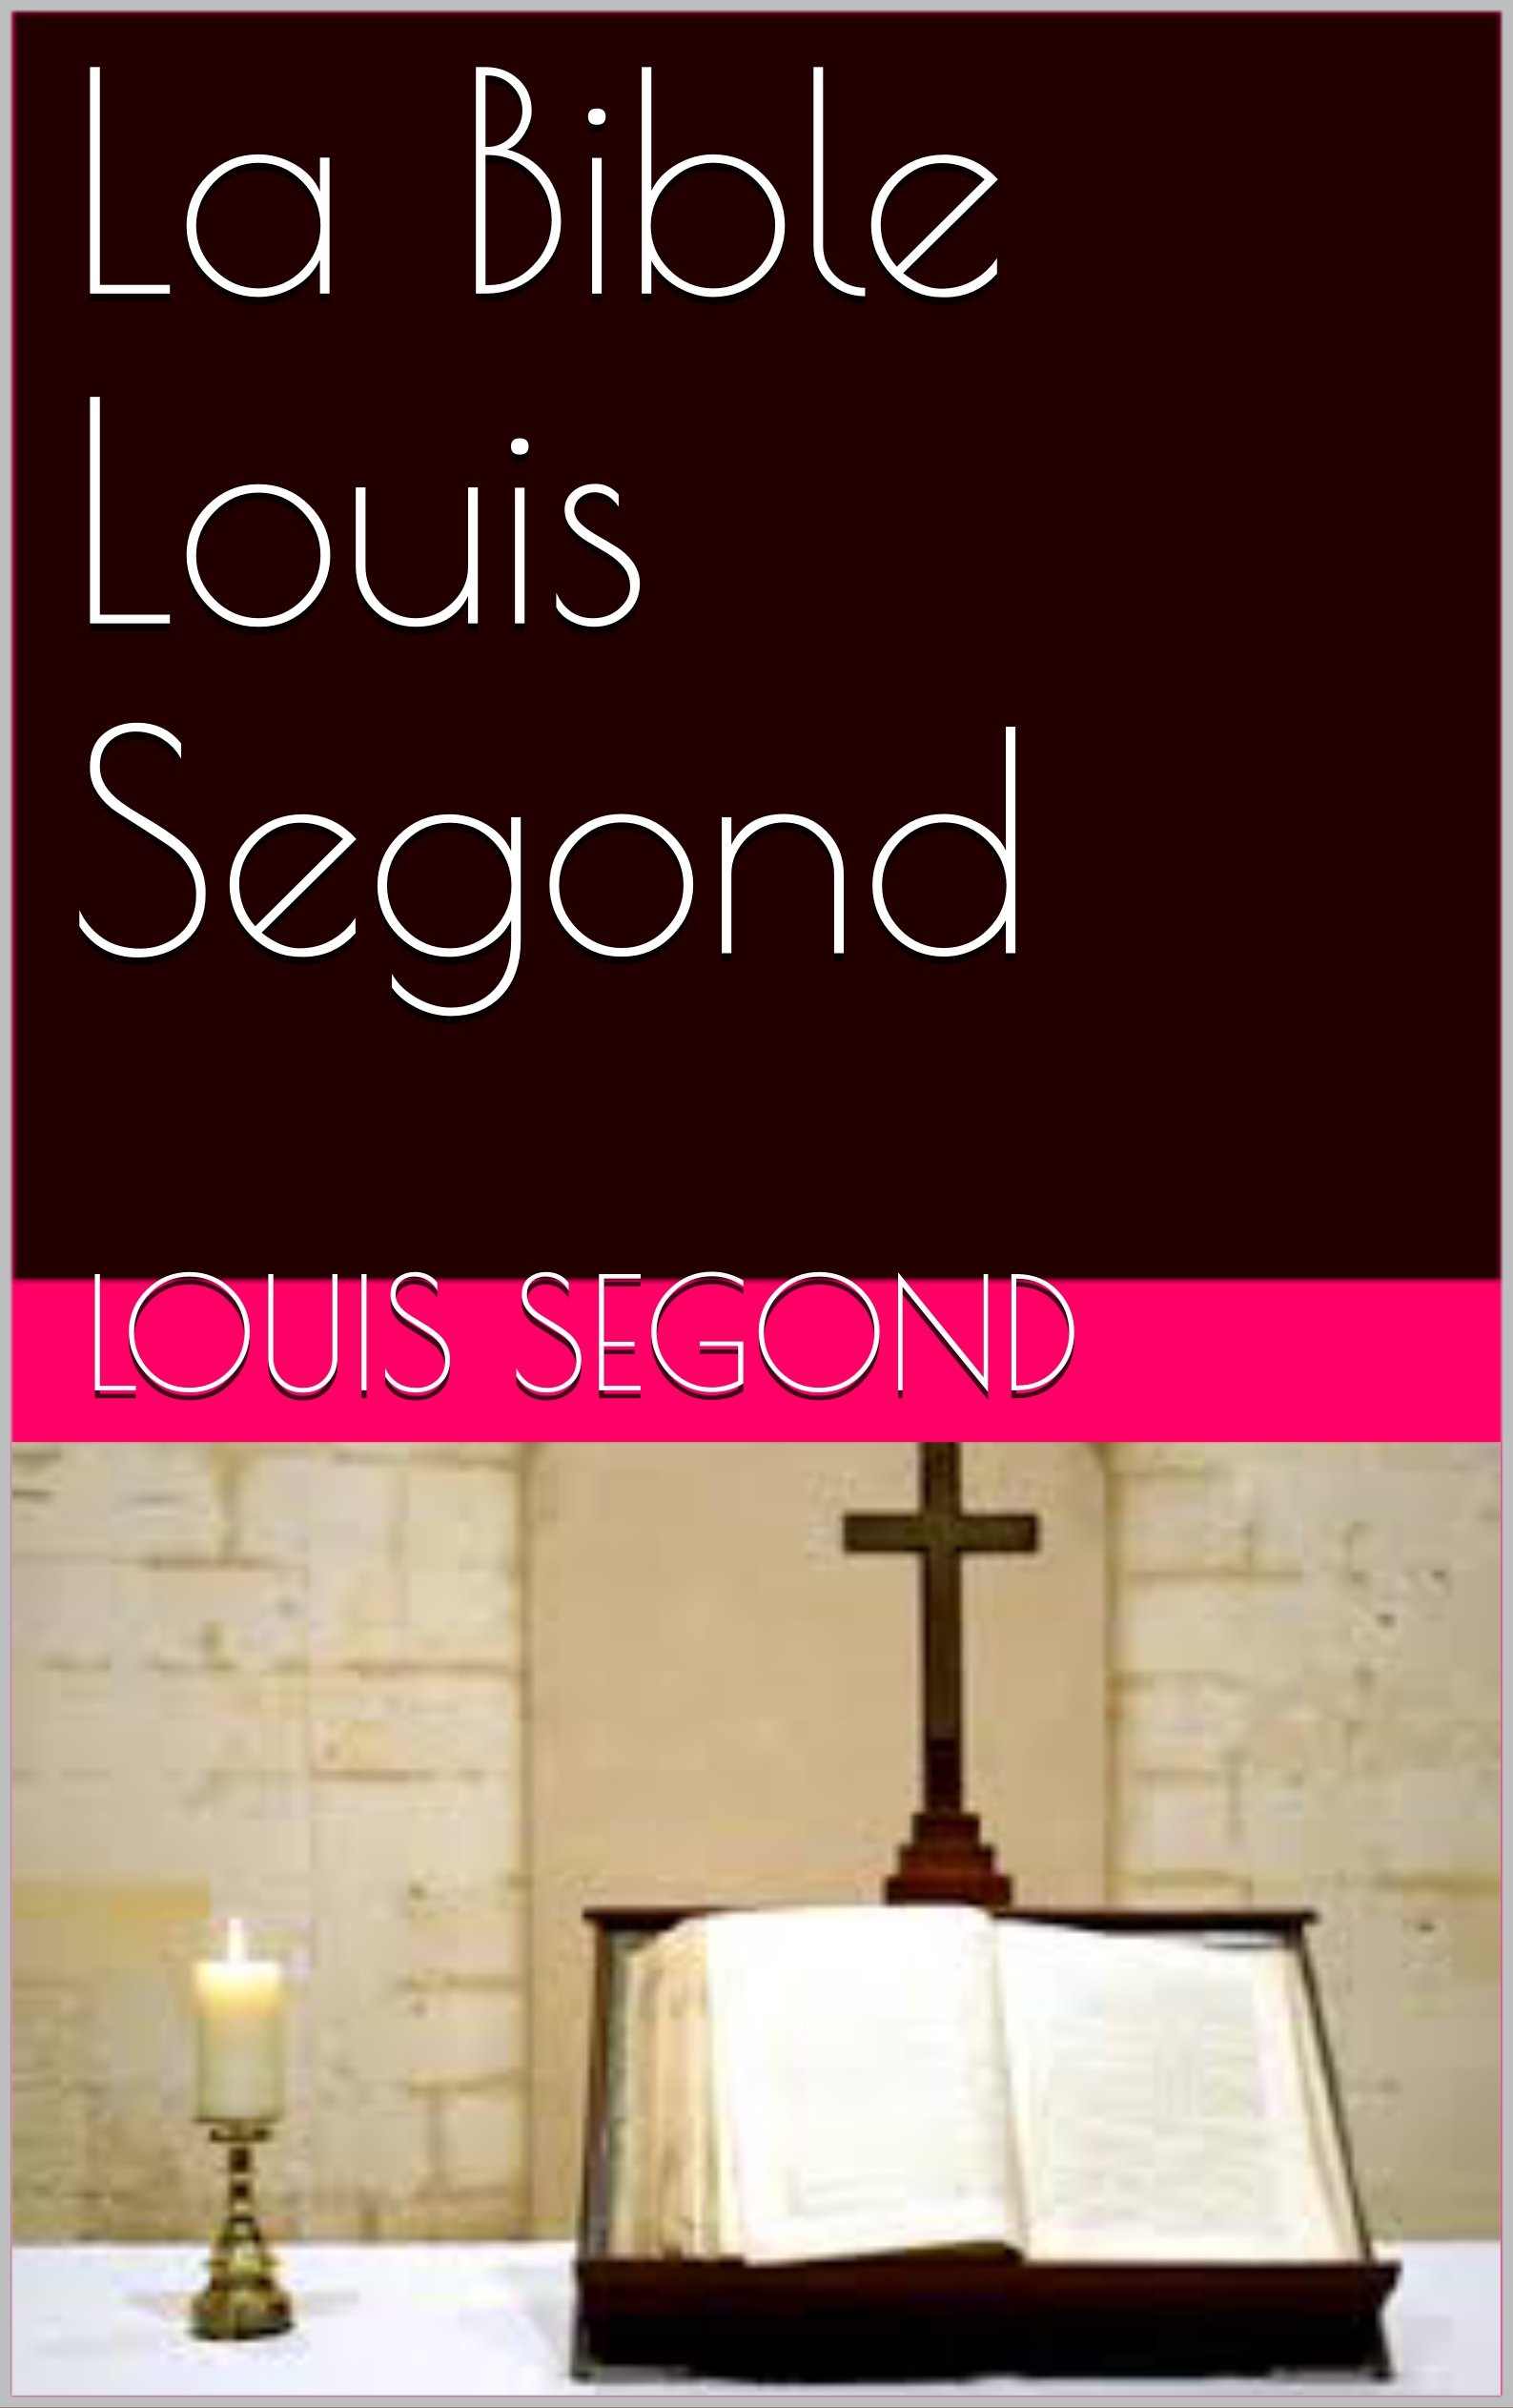 La Bible Louis Segond (French Edition)